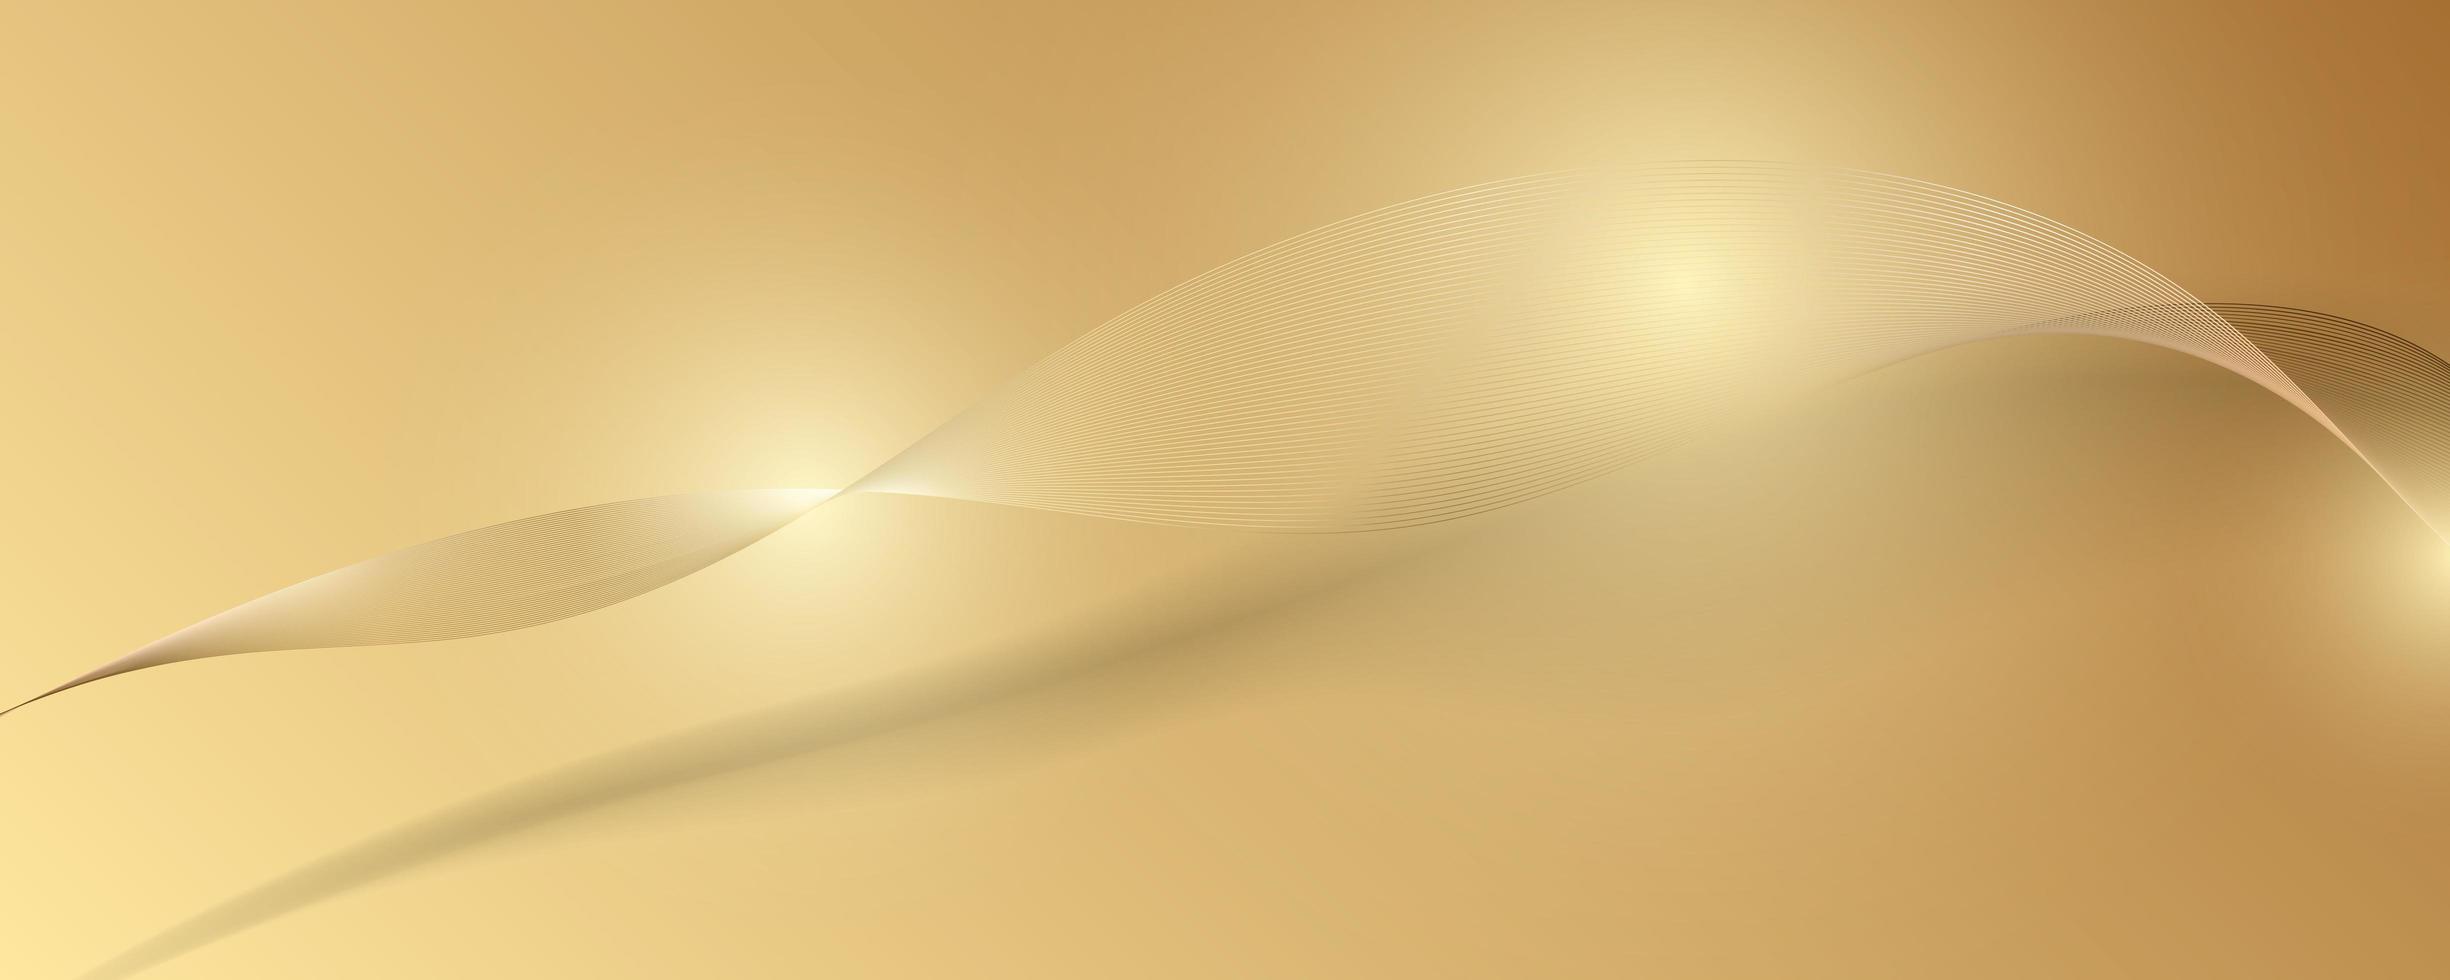 abstracte gouden luxe achtergrond. vector illustratie